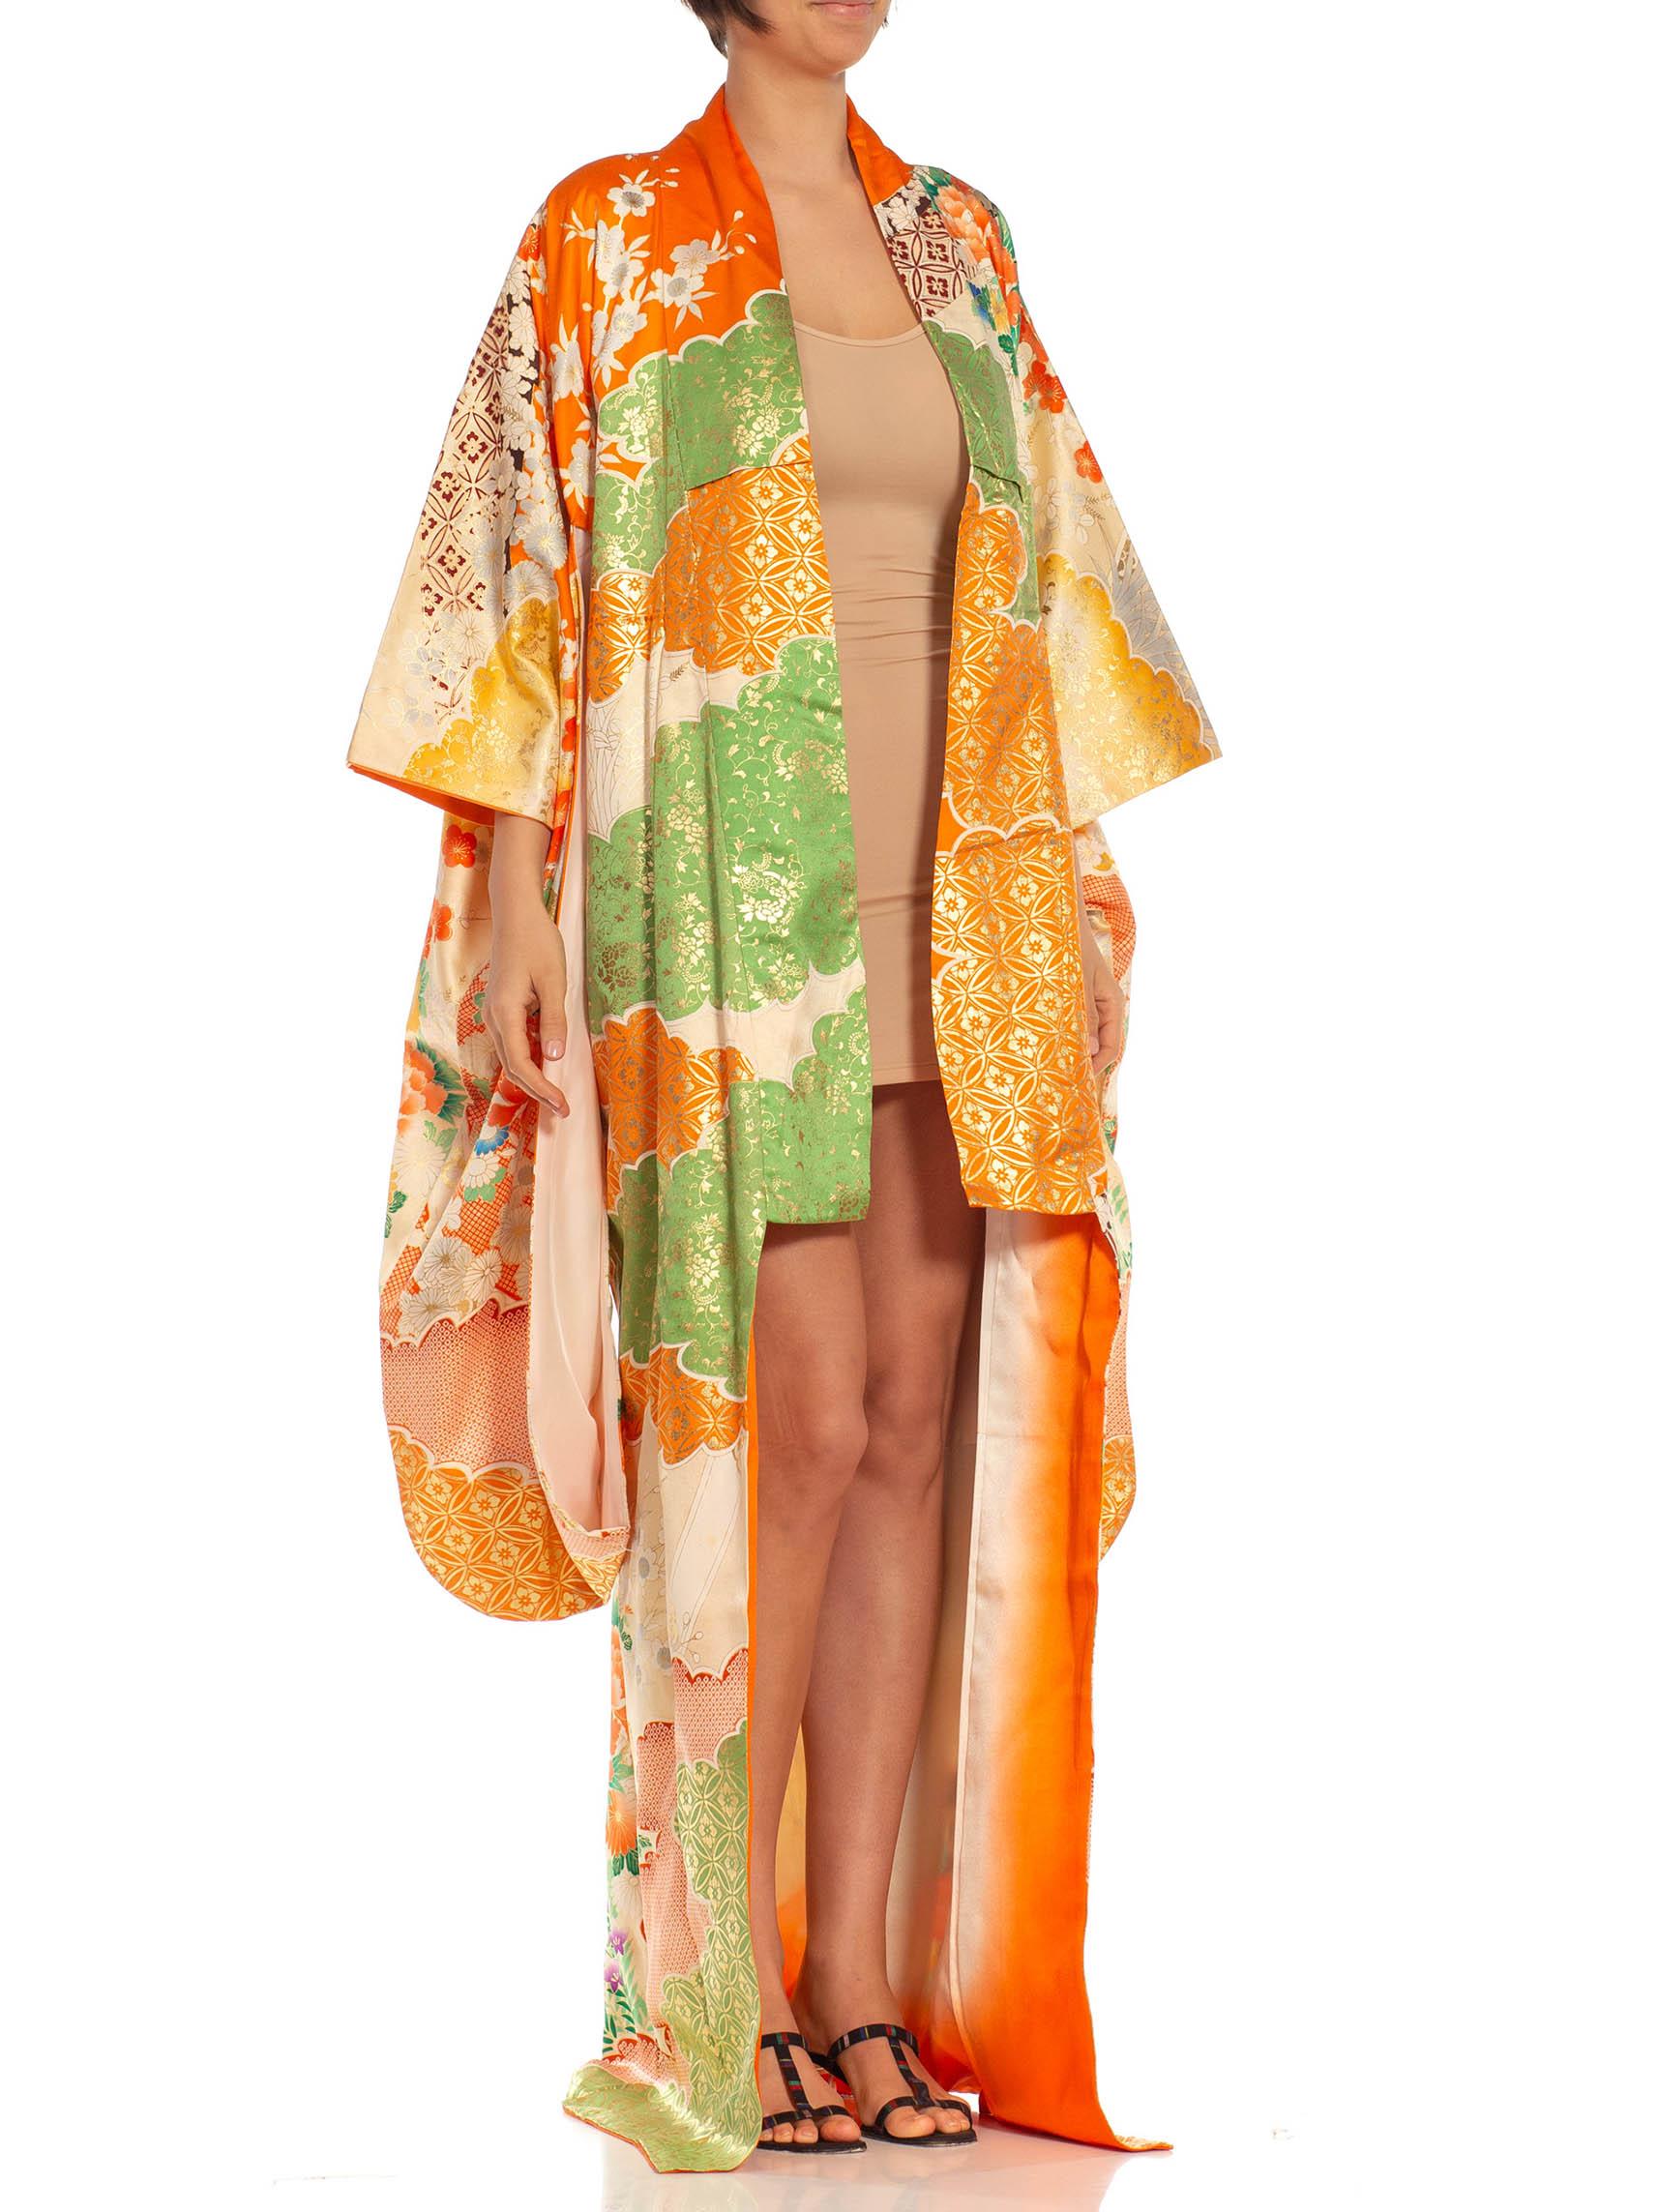 Orange, Green & Metallic Gold Floral Silk Kimono For Sale 2